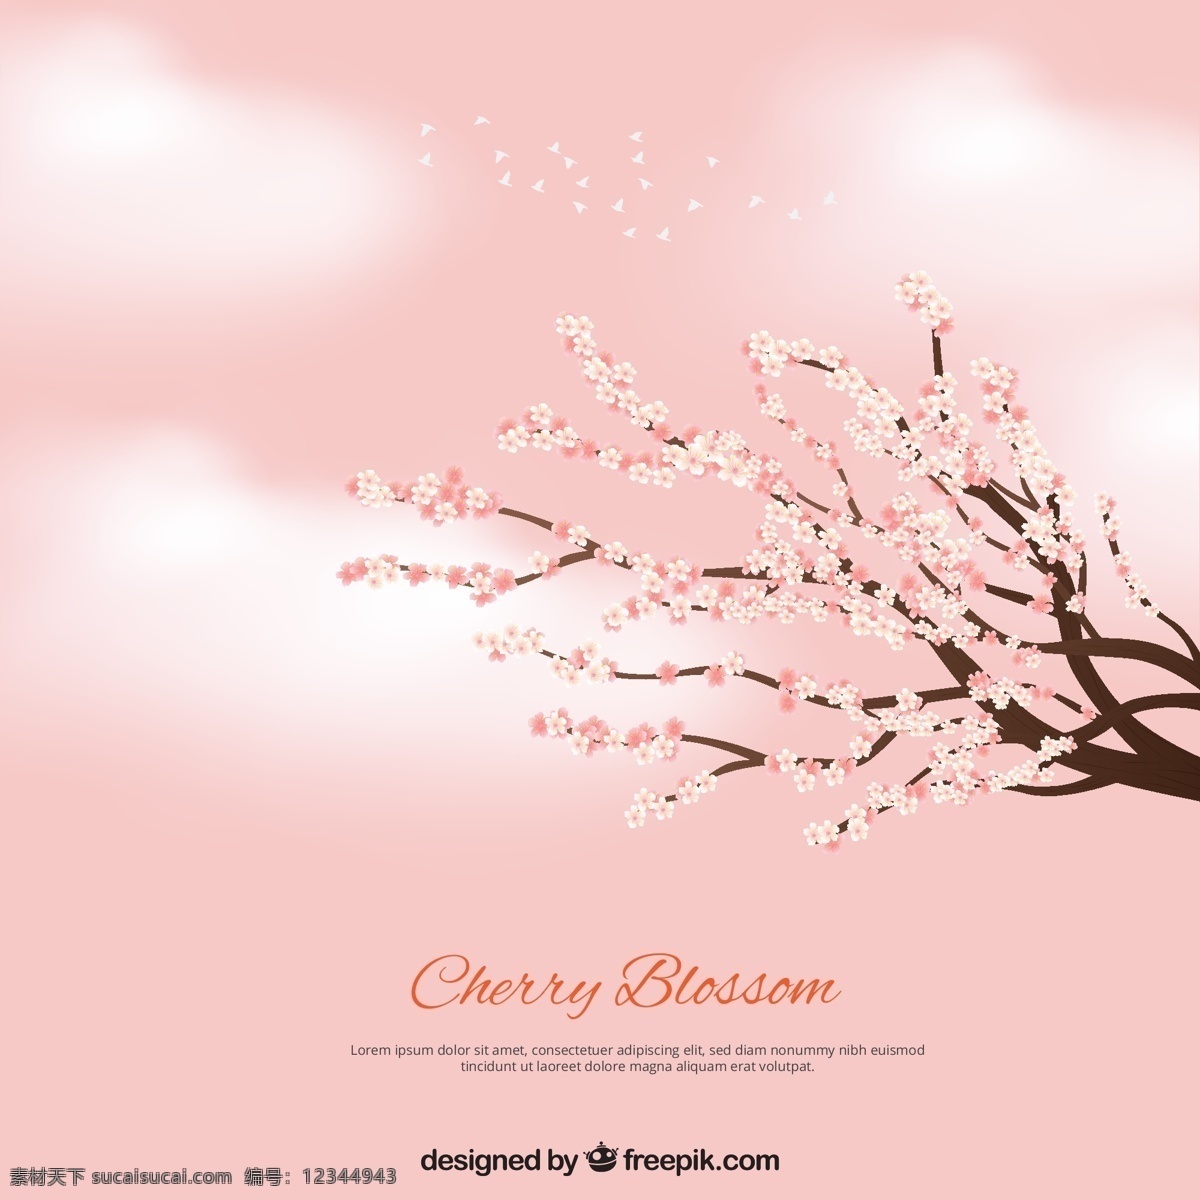 粉红色的背景 云朵 树枝 上 盛开 樱花 背景 花卉 自然 花卉背景 粉红色 春季 云彩 植物 自然背景 花朵 春天背景 美丽 季节